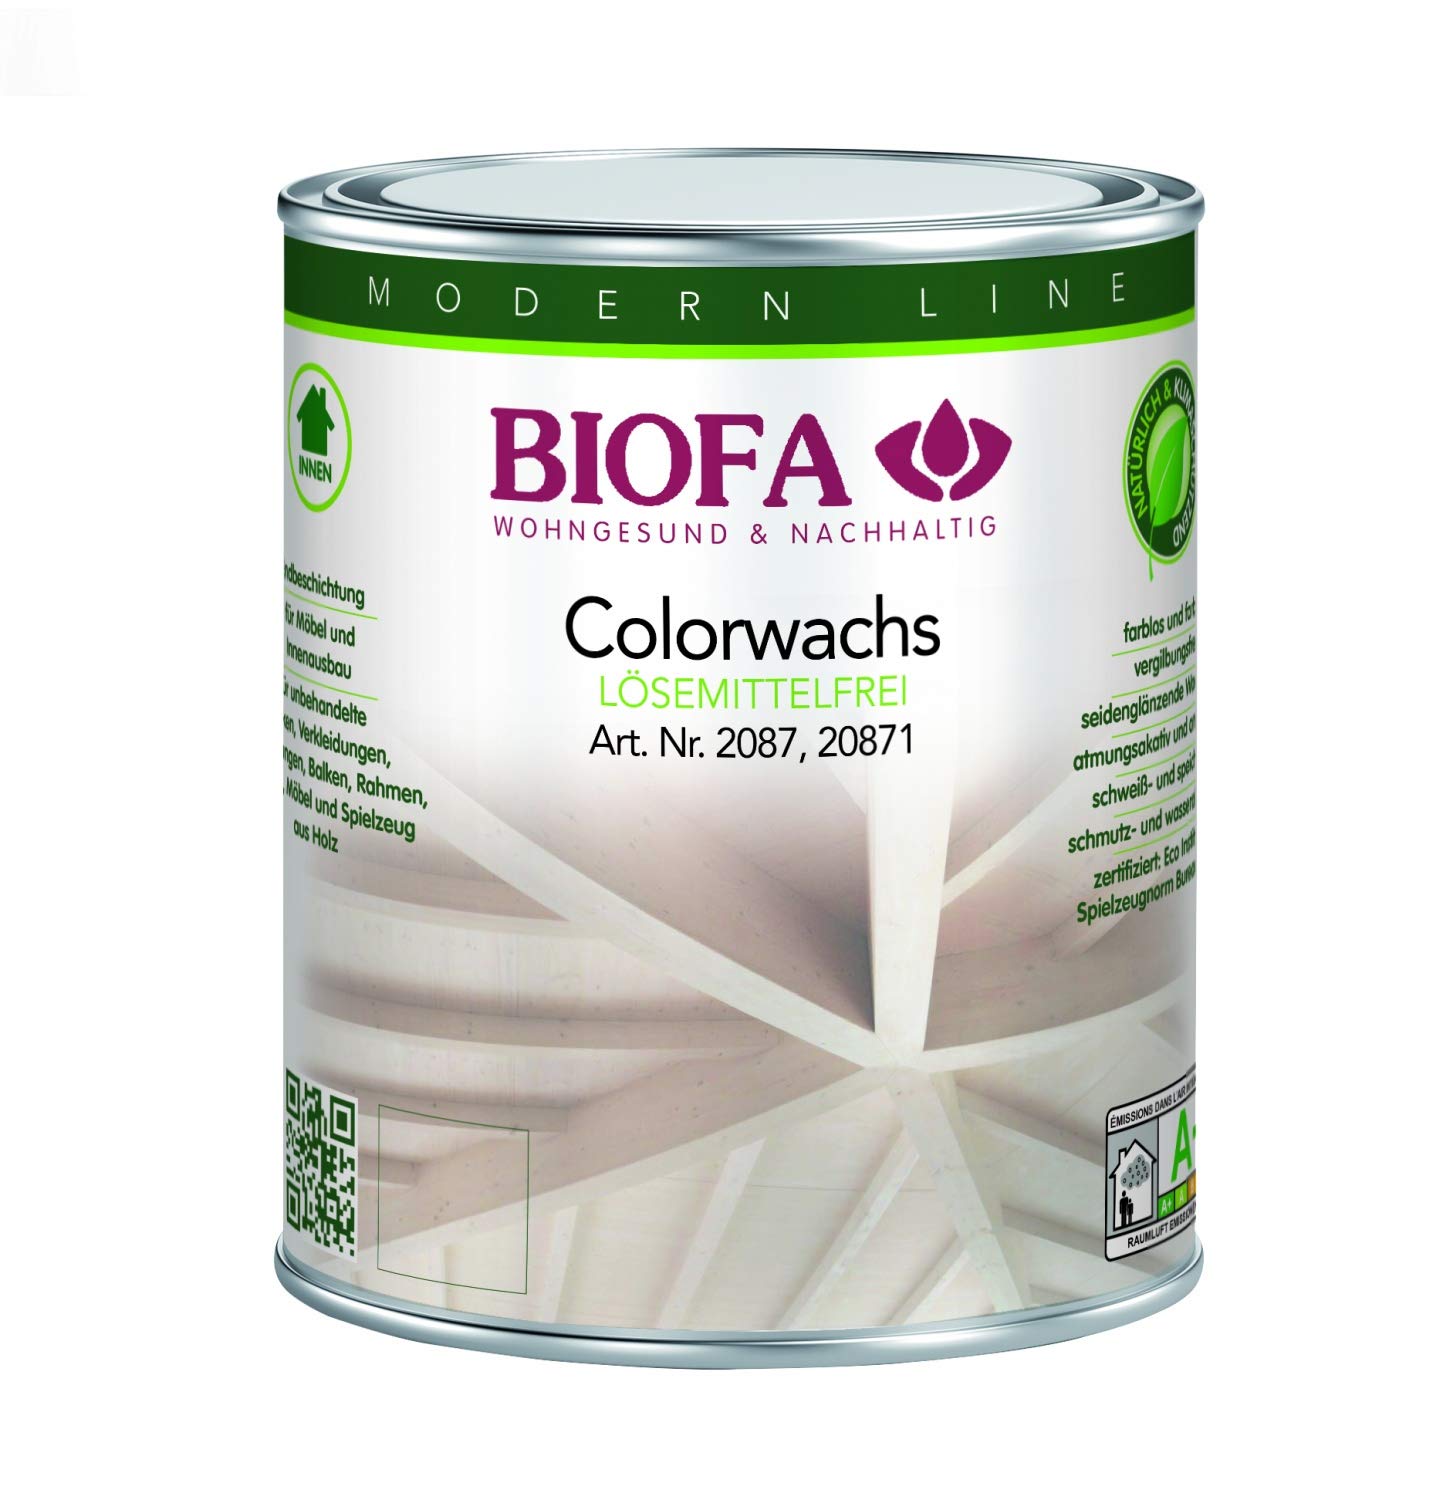 Biofa | Colorwachs lösemittelfrei | farbig - weiß Größe 1,00 L